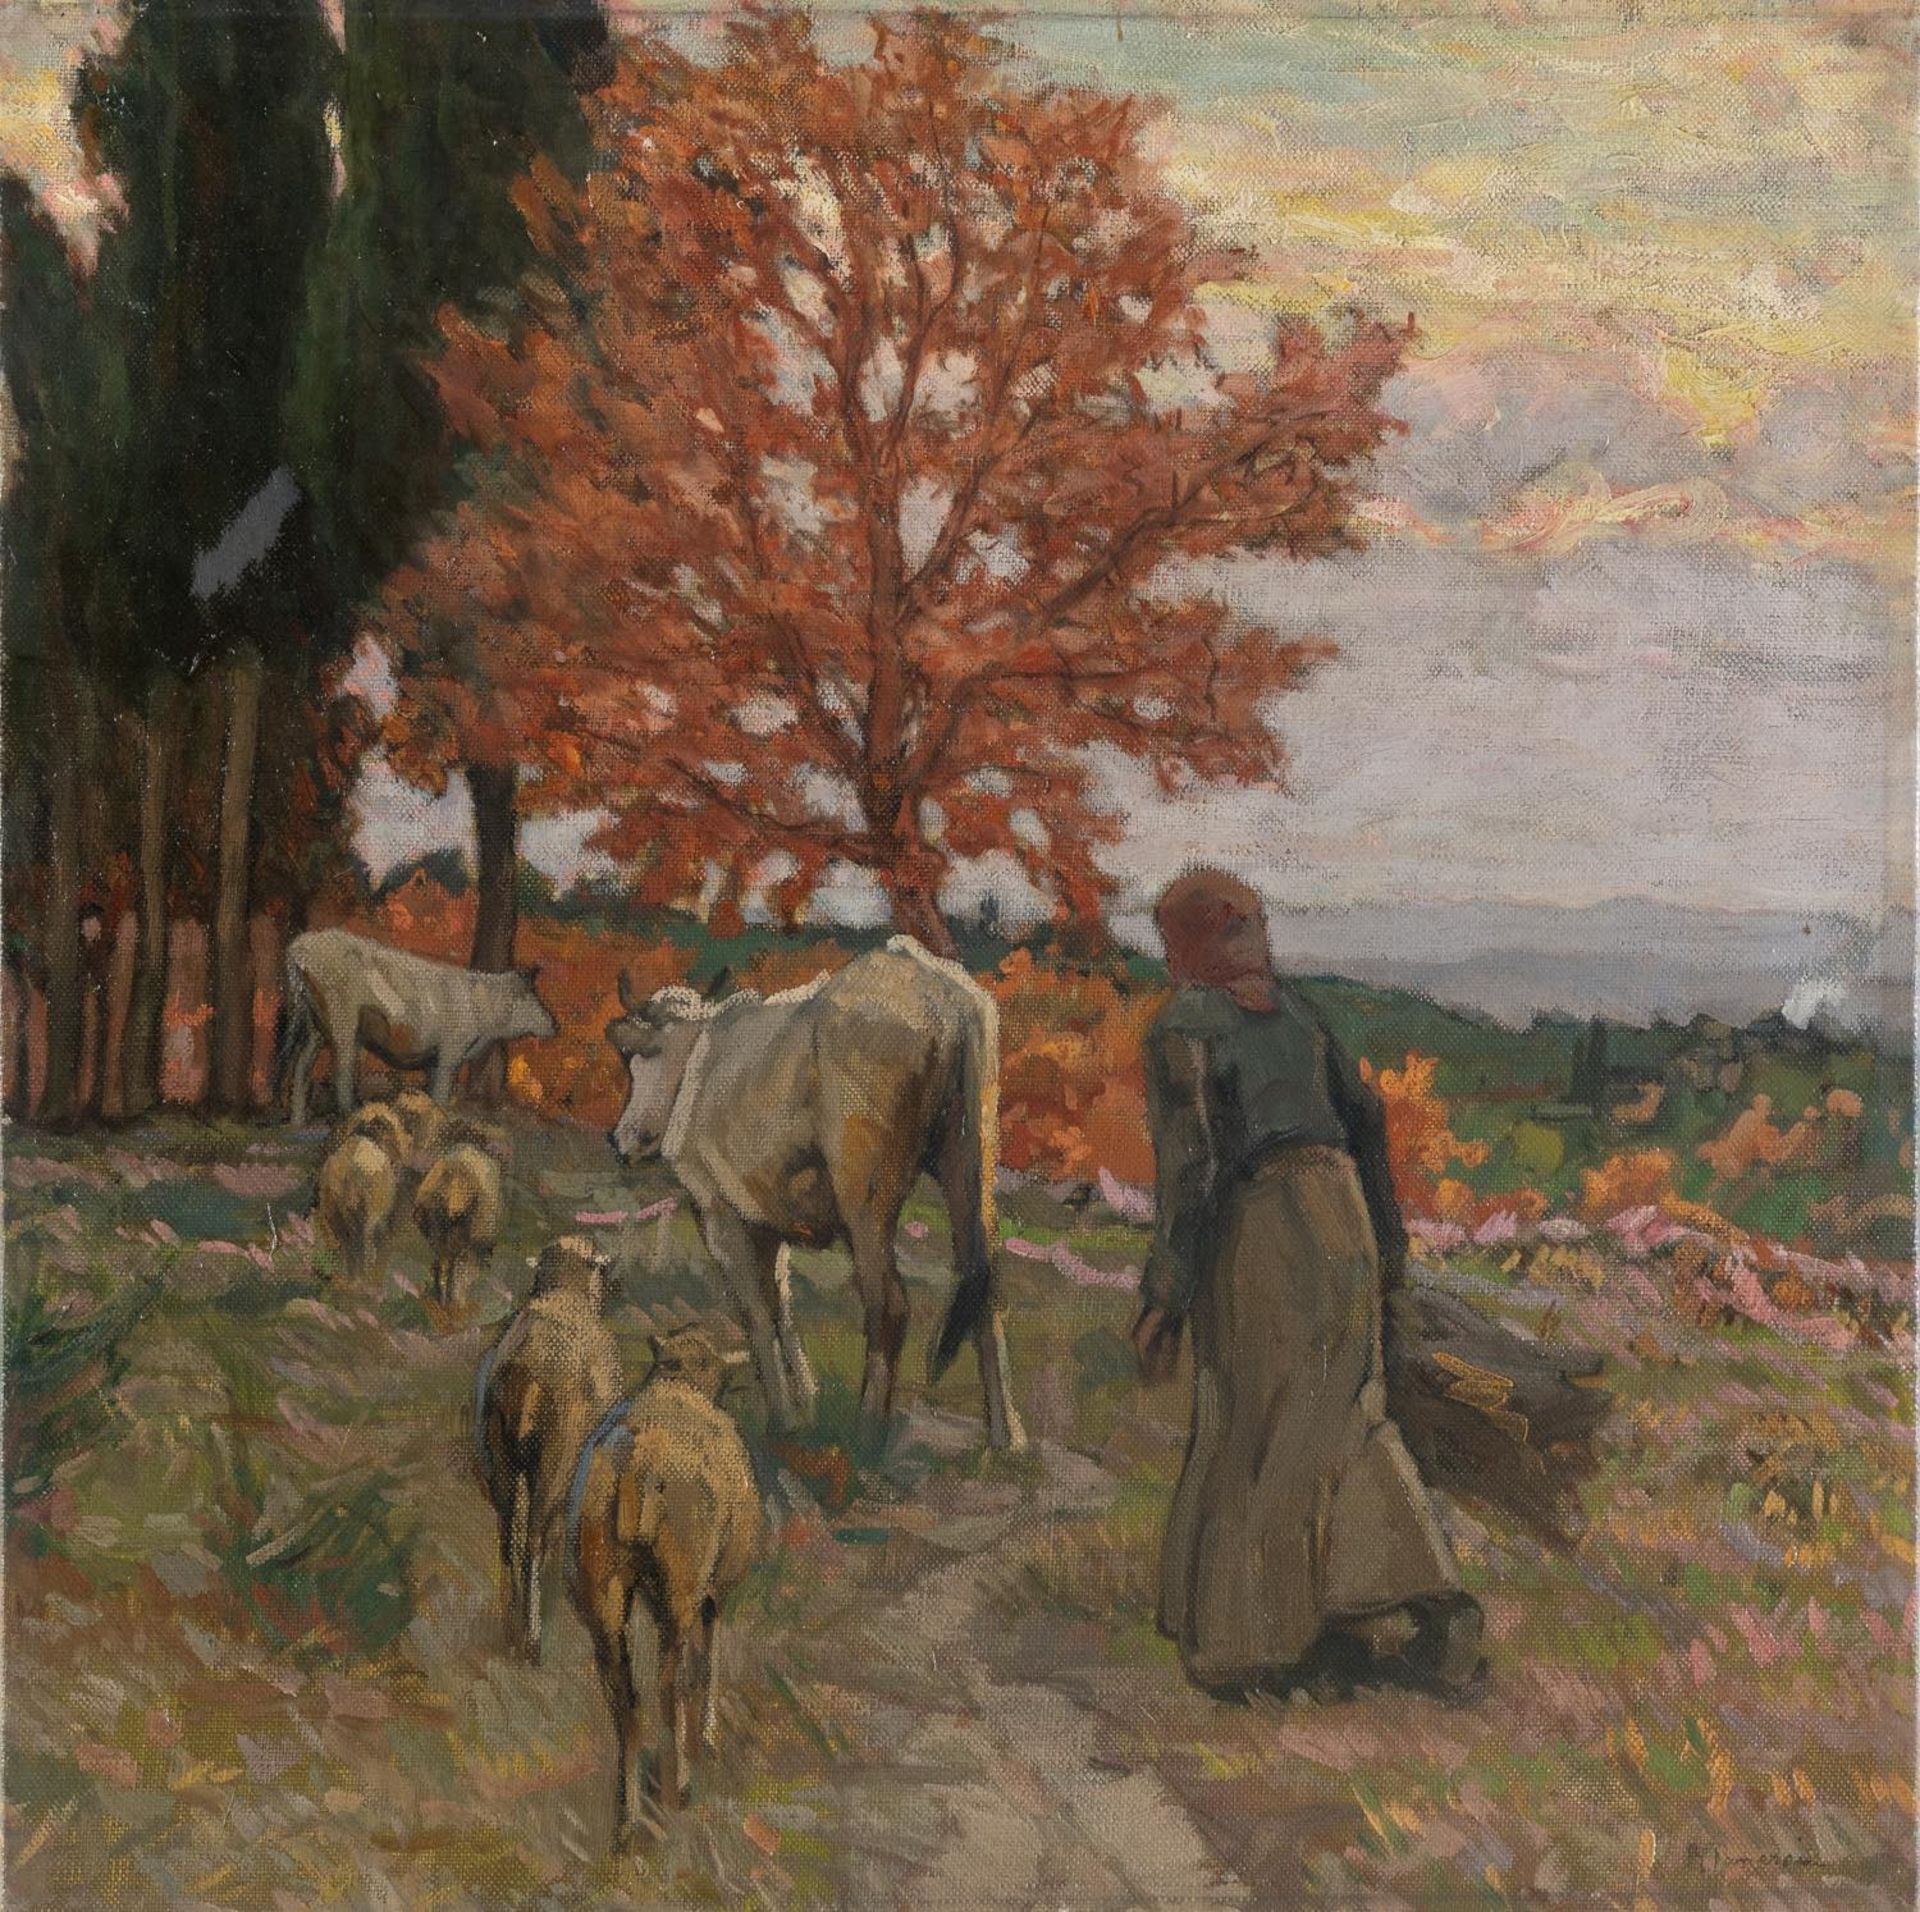 Ruggero Panerai (Firenze 1862 - Parigi 1923), “Il ritorno al tramonto”. Olio su tela, firmato